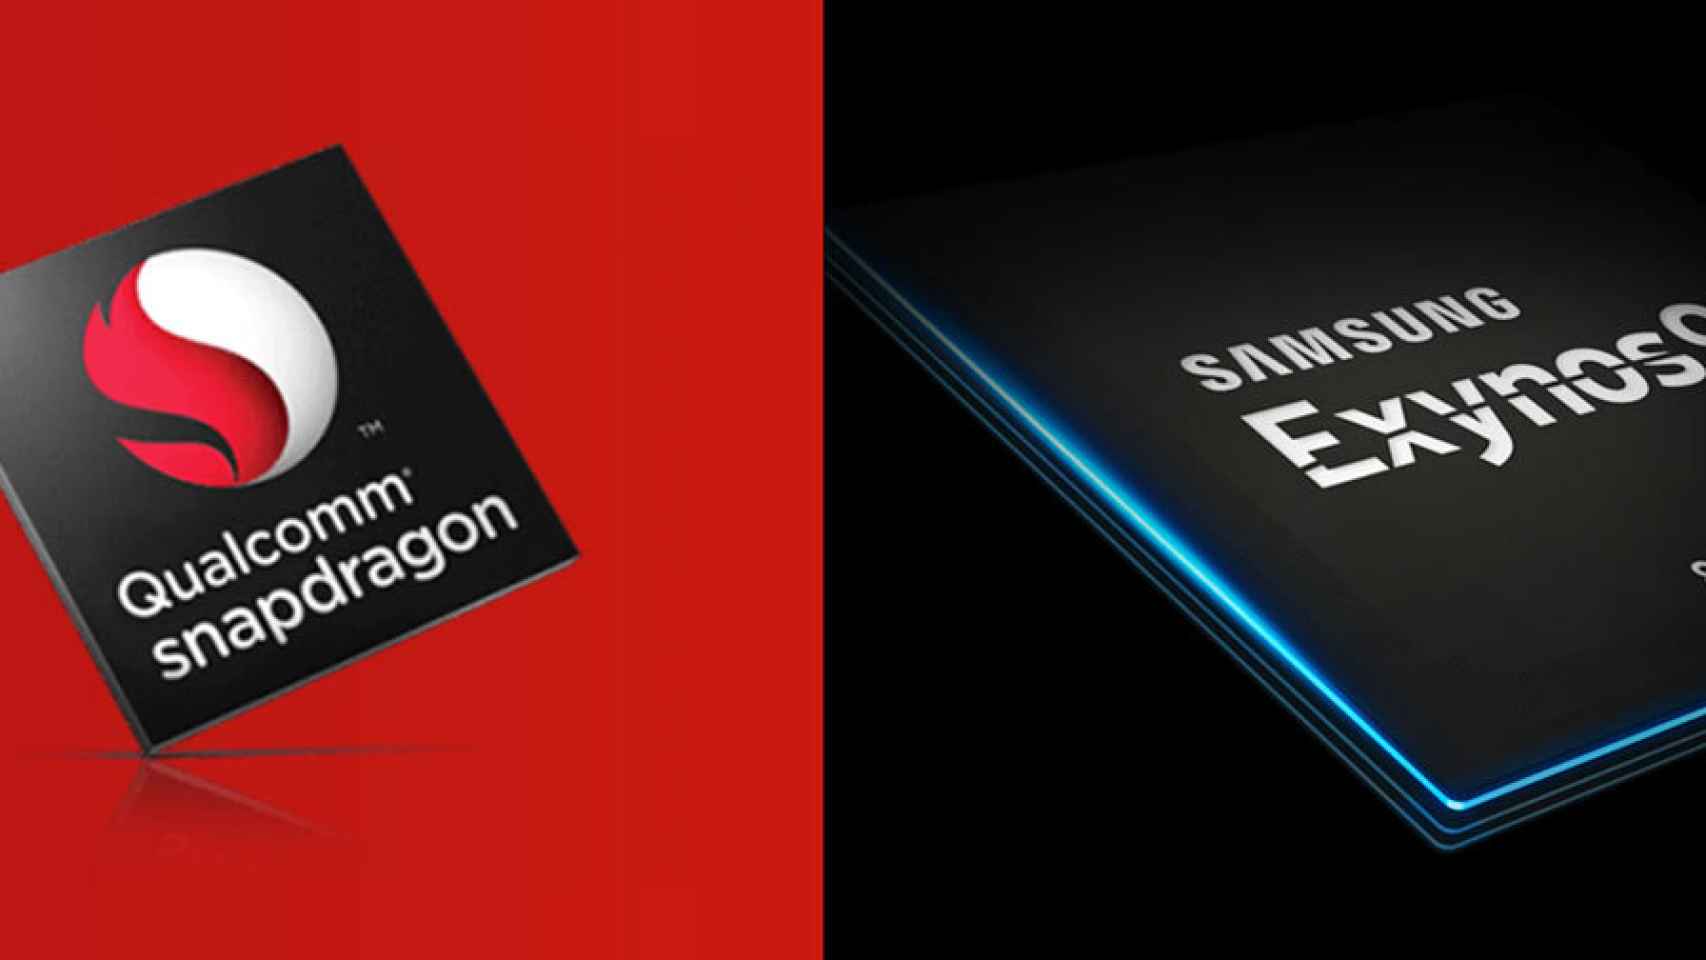 El Exynos 9610 será el procesador que competirá con el Snapdragon 660